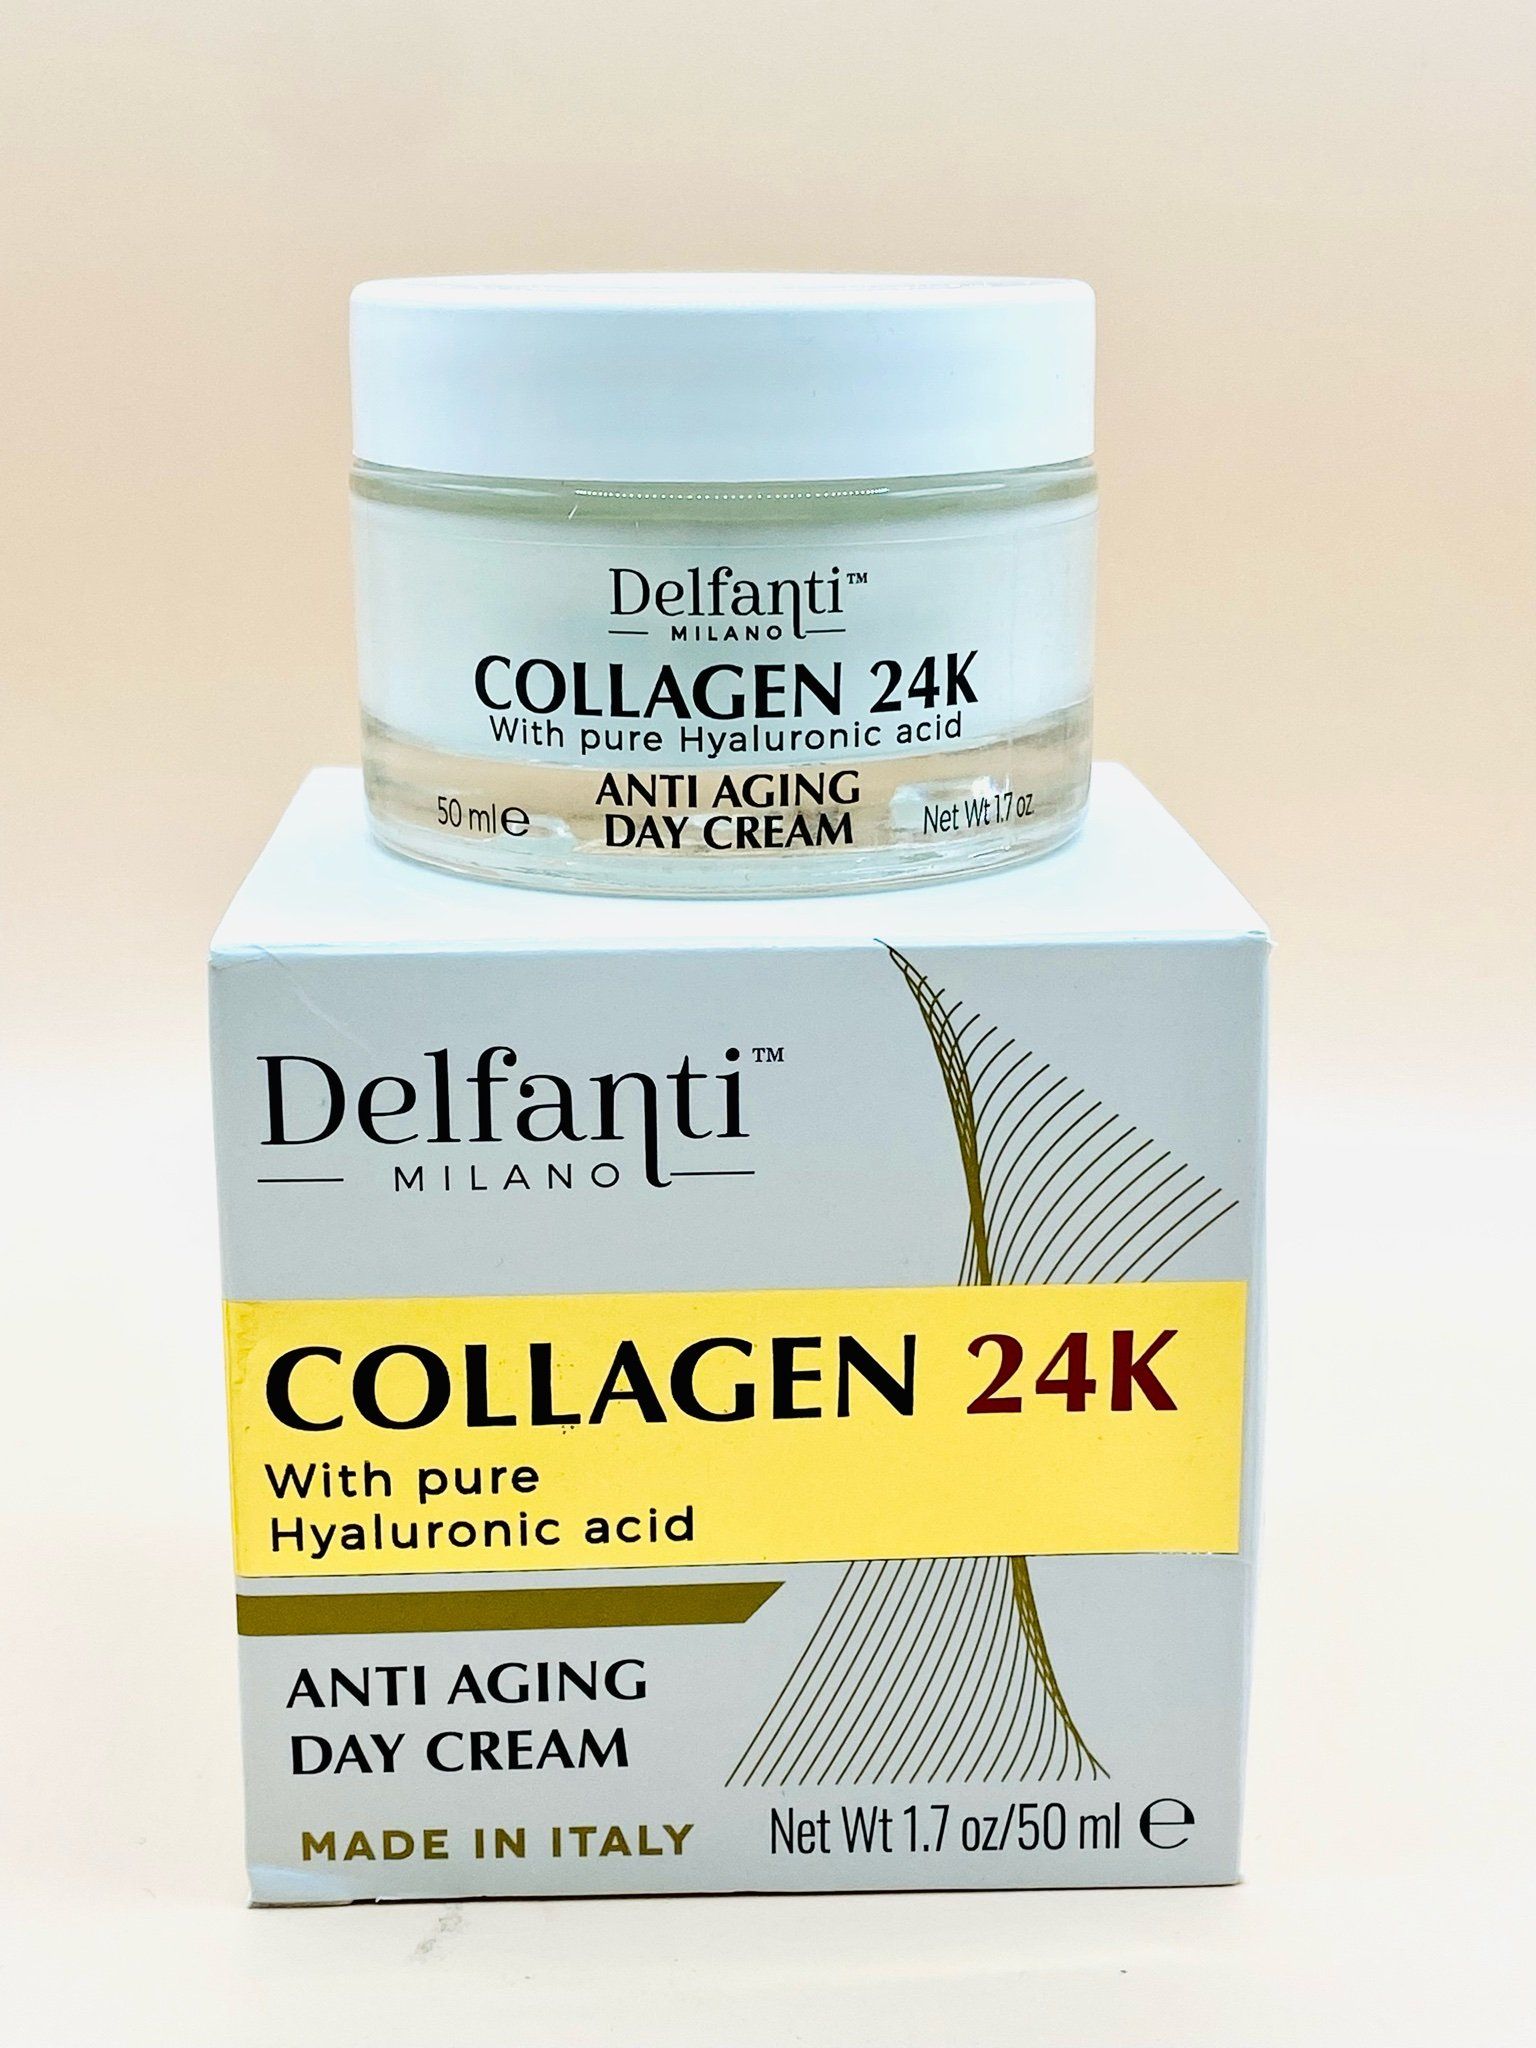  Kem Dưỡng Da Chống Lão Hóa Delfanti Collagen 24k Pure Hyaluronic Acid Anti-Aging ban ngày 50ml 